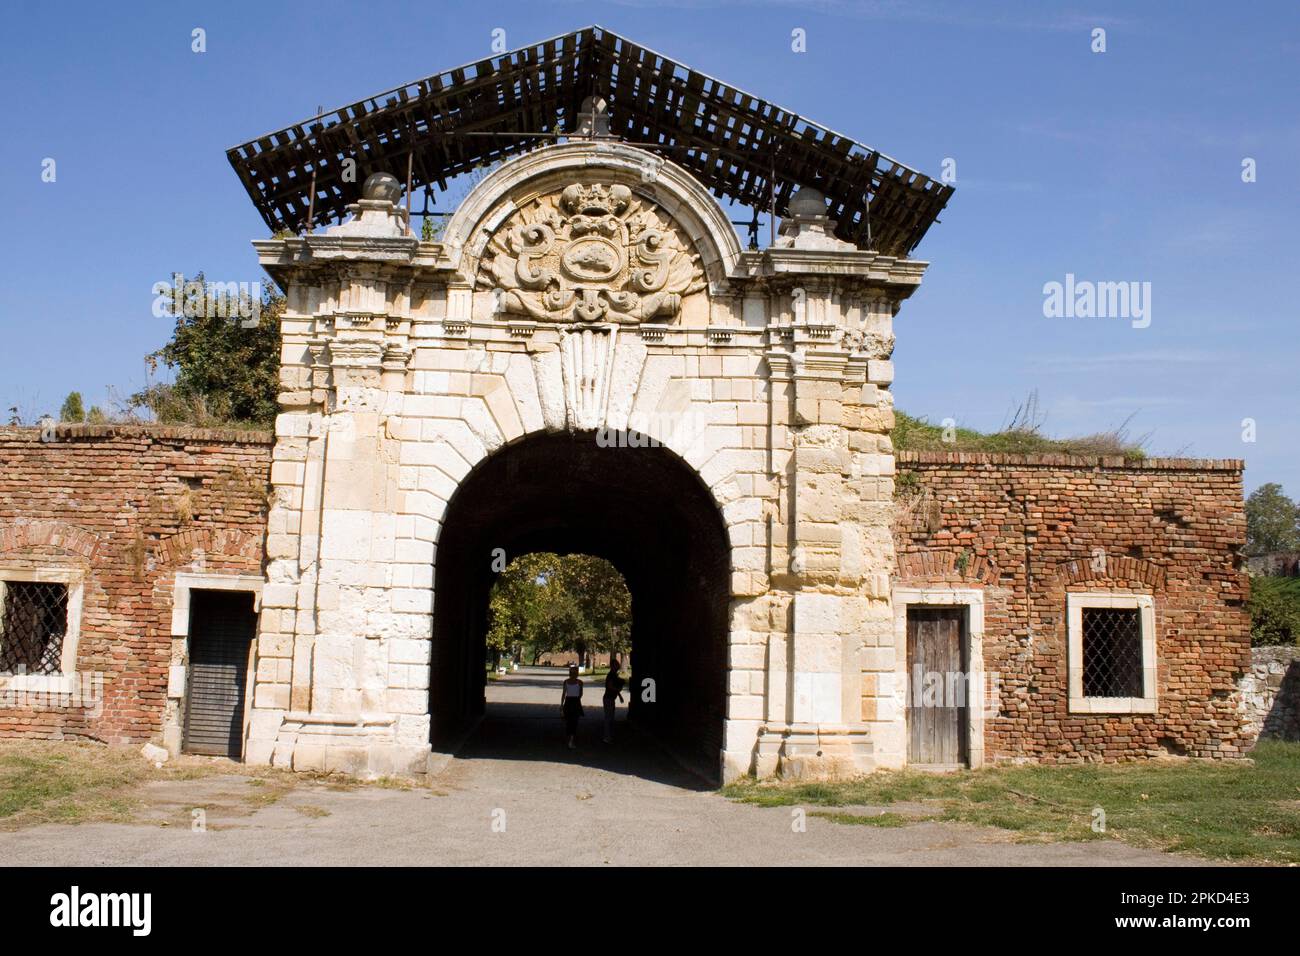 Charles VI Gate, Kapija Karla VI, Donji Grad, Lower Town, Belgrade Fortress, Kalemegdan Park, Belgrade, Serbia Stock Photo